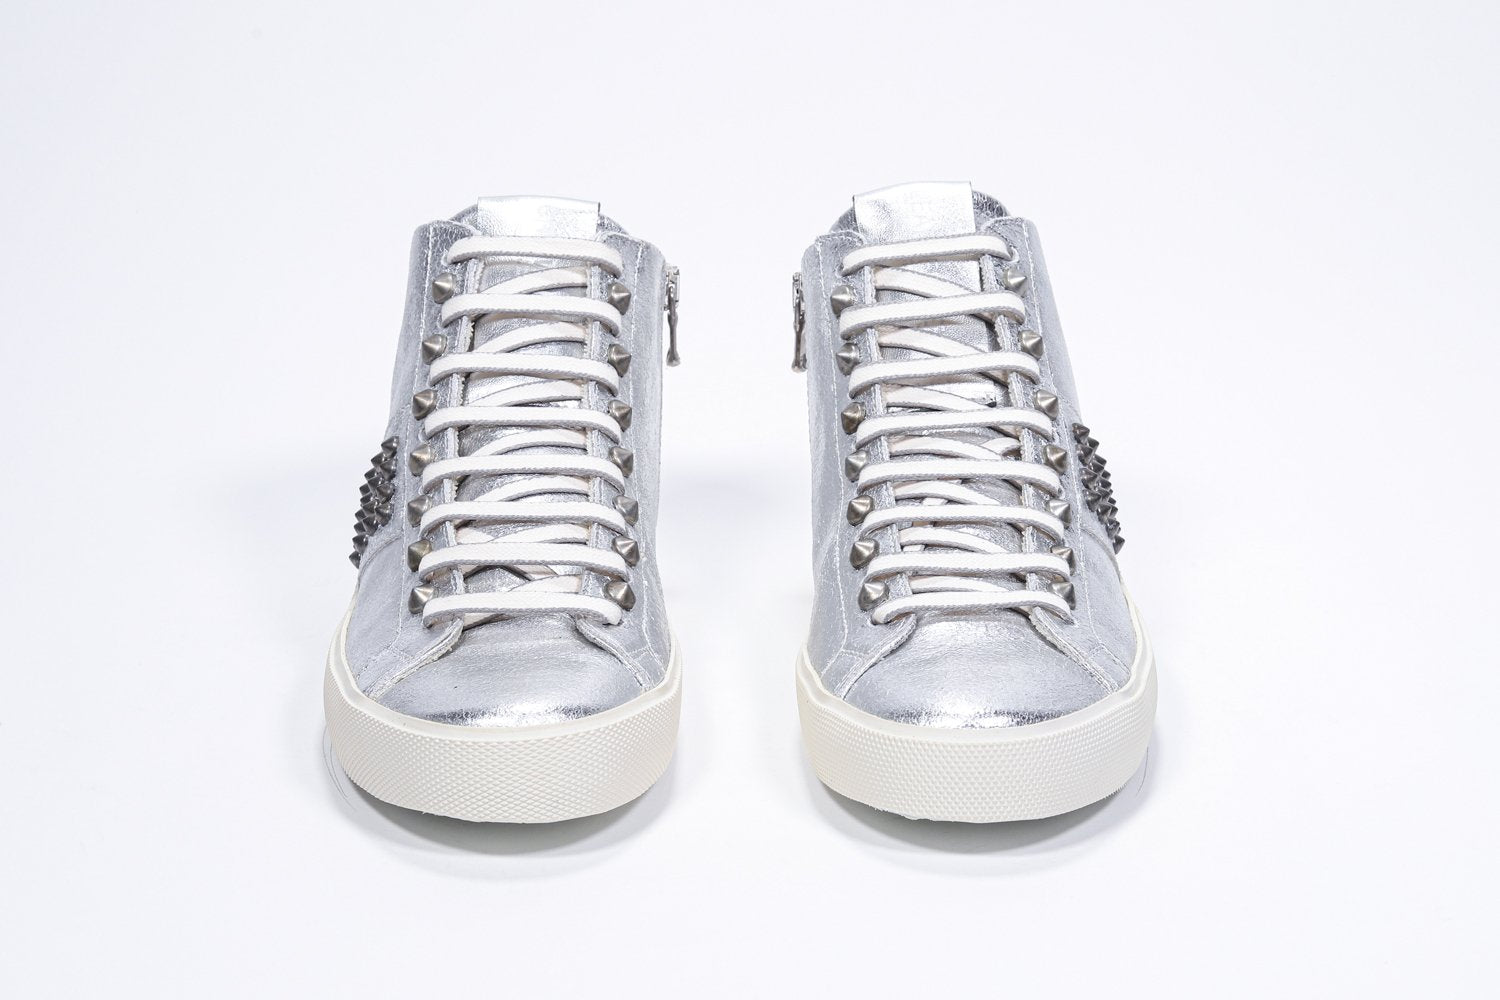 Vorderansicht von Mid Top Metallic Silber sneaker. Obermaterial aus Vollleder mit Nieten, einem internen Reißverschluss und einer Vintage-Gummisohle.